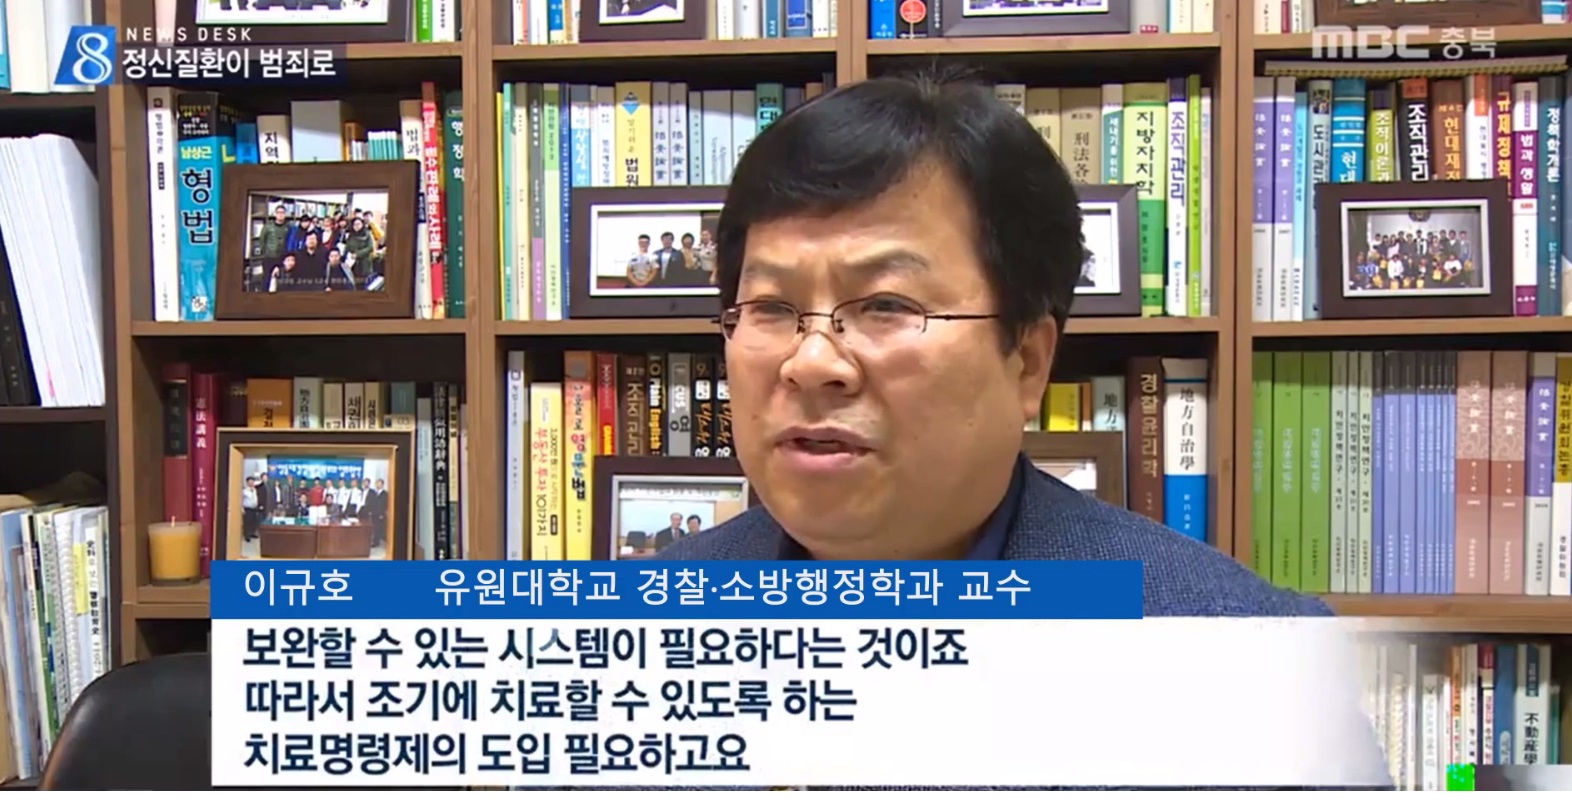 [언론보도] MBC 뉴스데스크 '정신질환이 범죄로' 인터뷰 (이규호 교수) 사진1